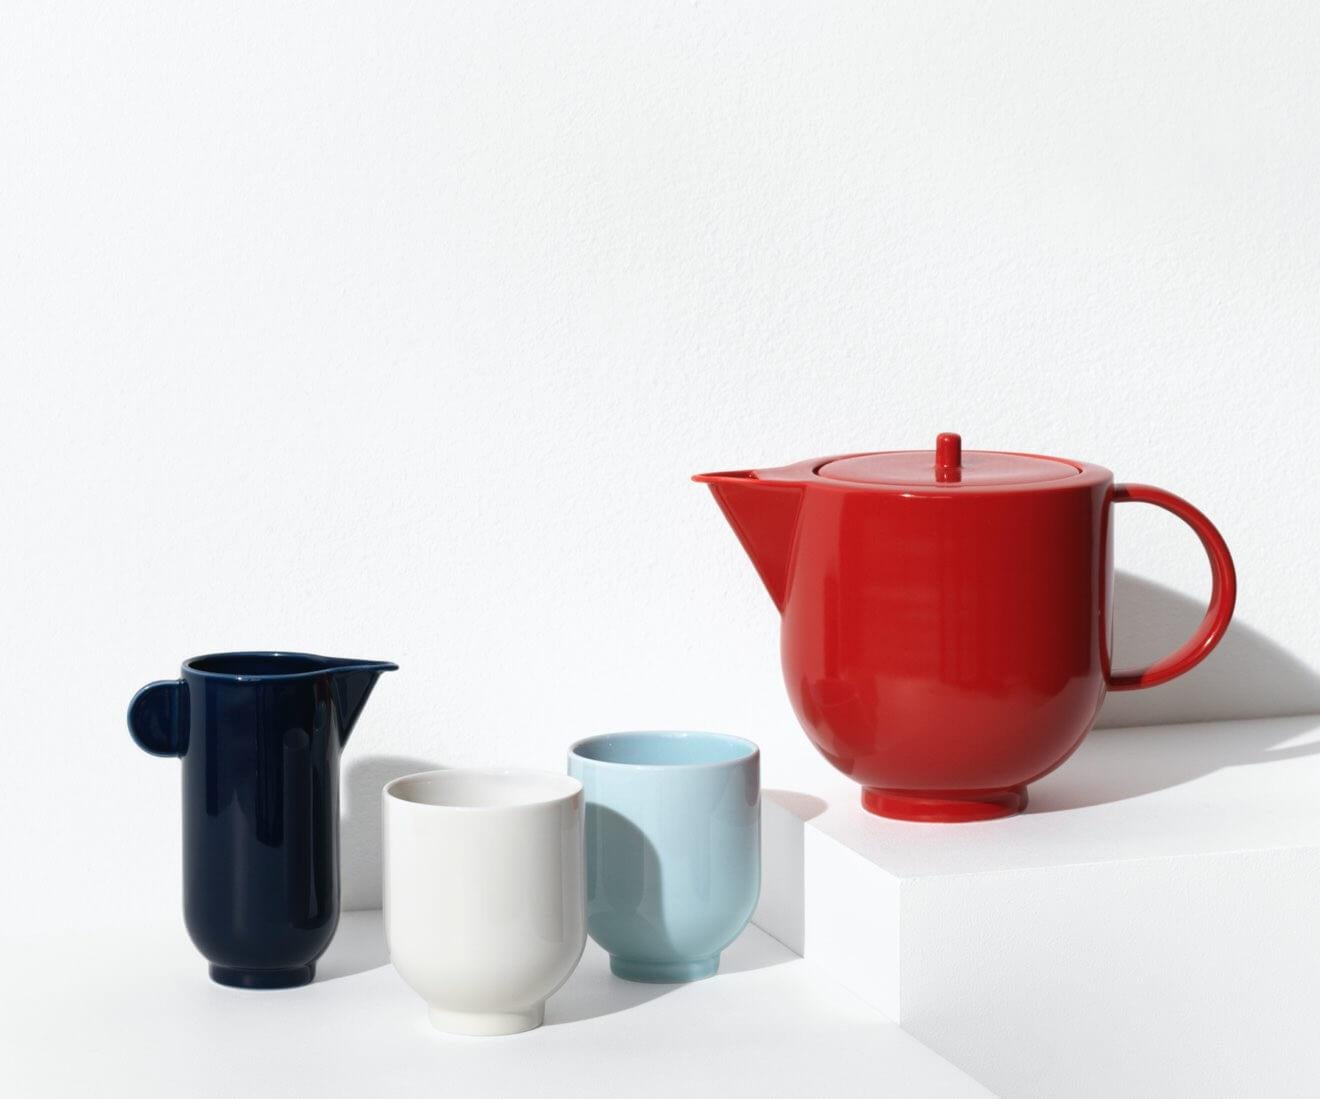 La tasse YOKO est une pièce de vaisselle importante et distinctive. Sa forme simple et sculpturale, aux arêtes fermes et tranchantes, met à l'épreuve le matériau tendre qu'est la porcelaine.

Le mug est disponible en blanc coquille d'œuf et en bleu